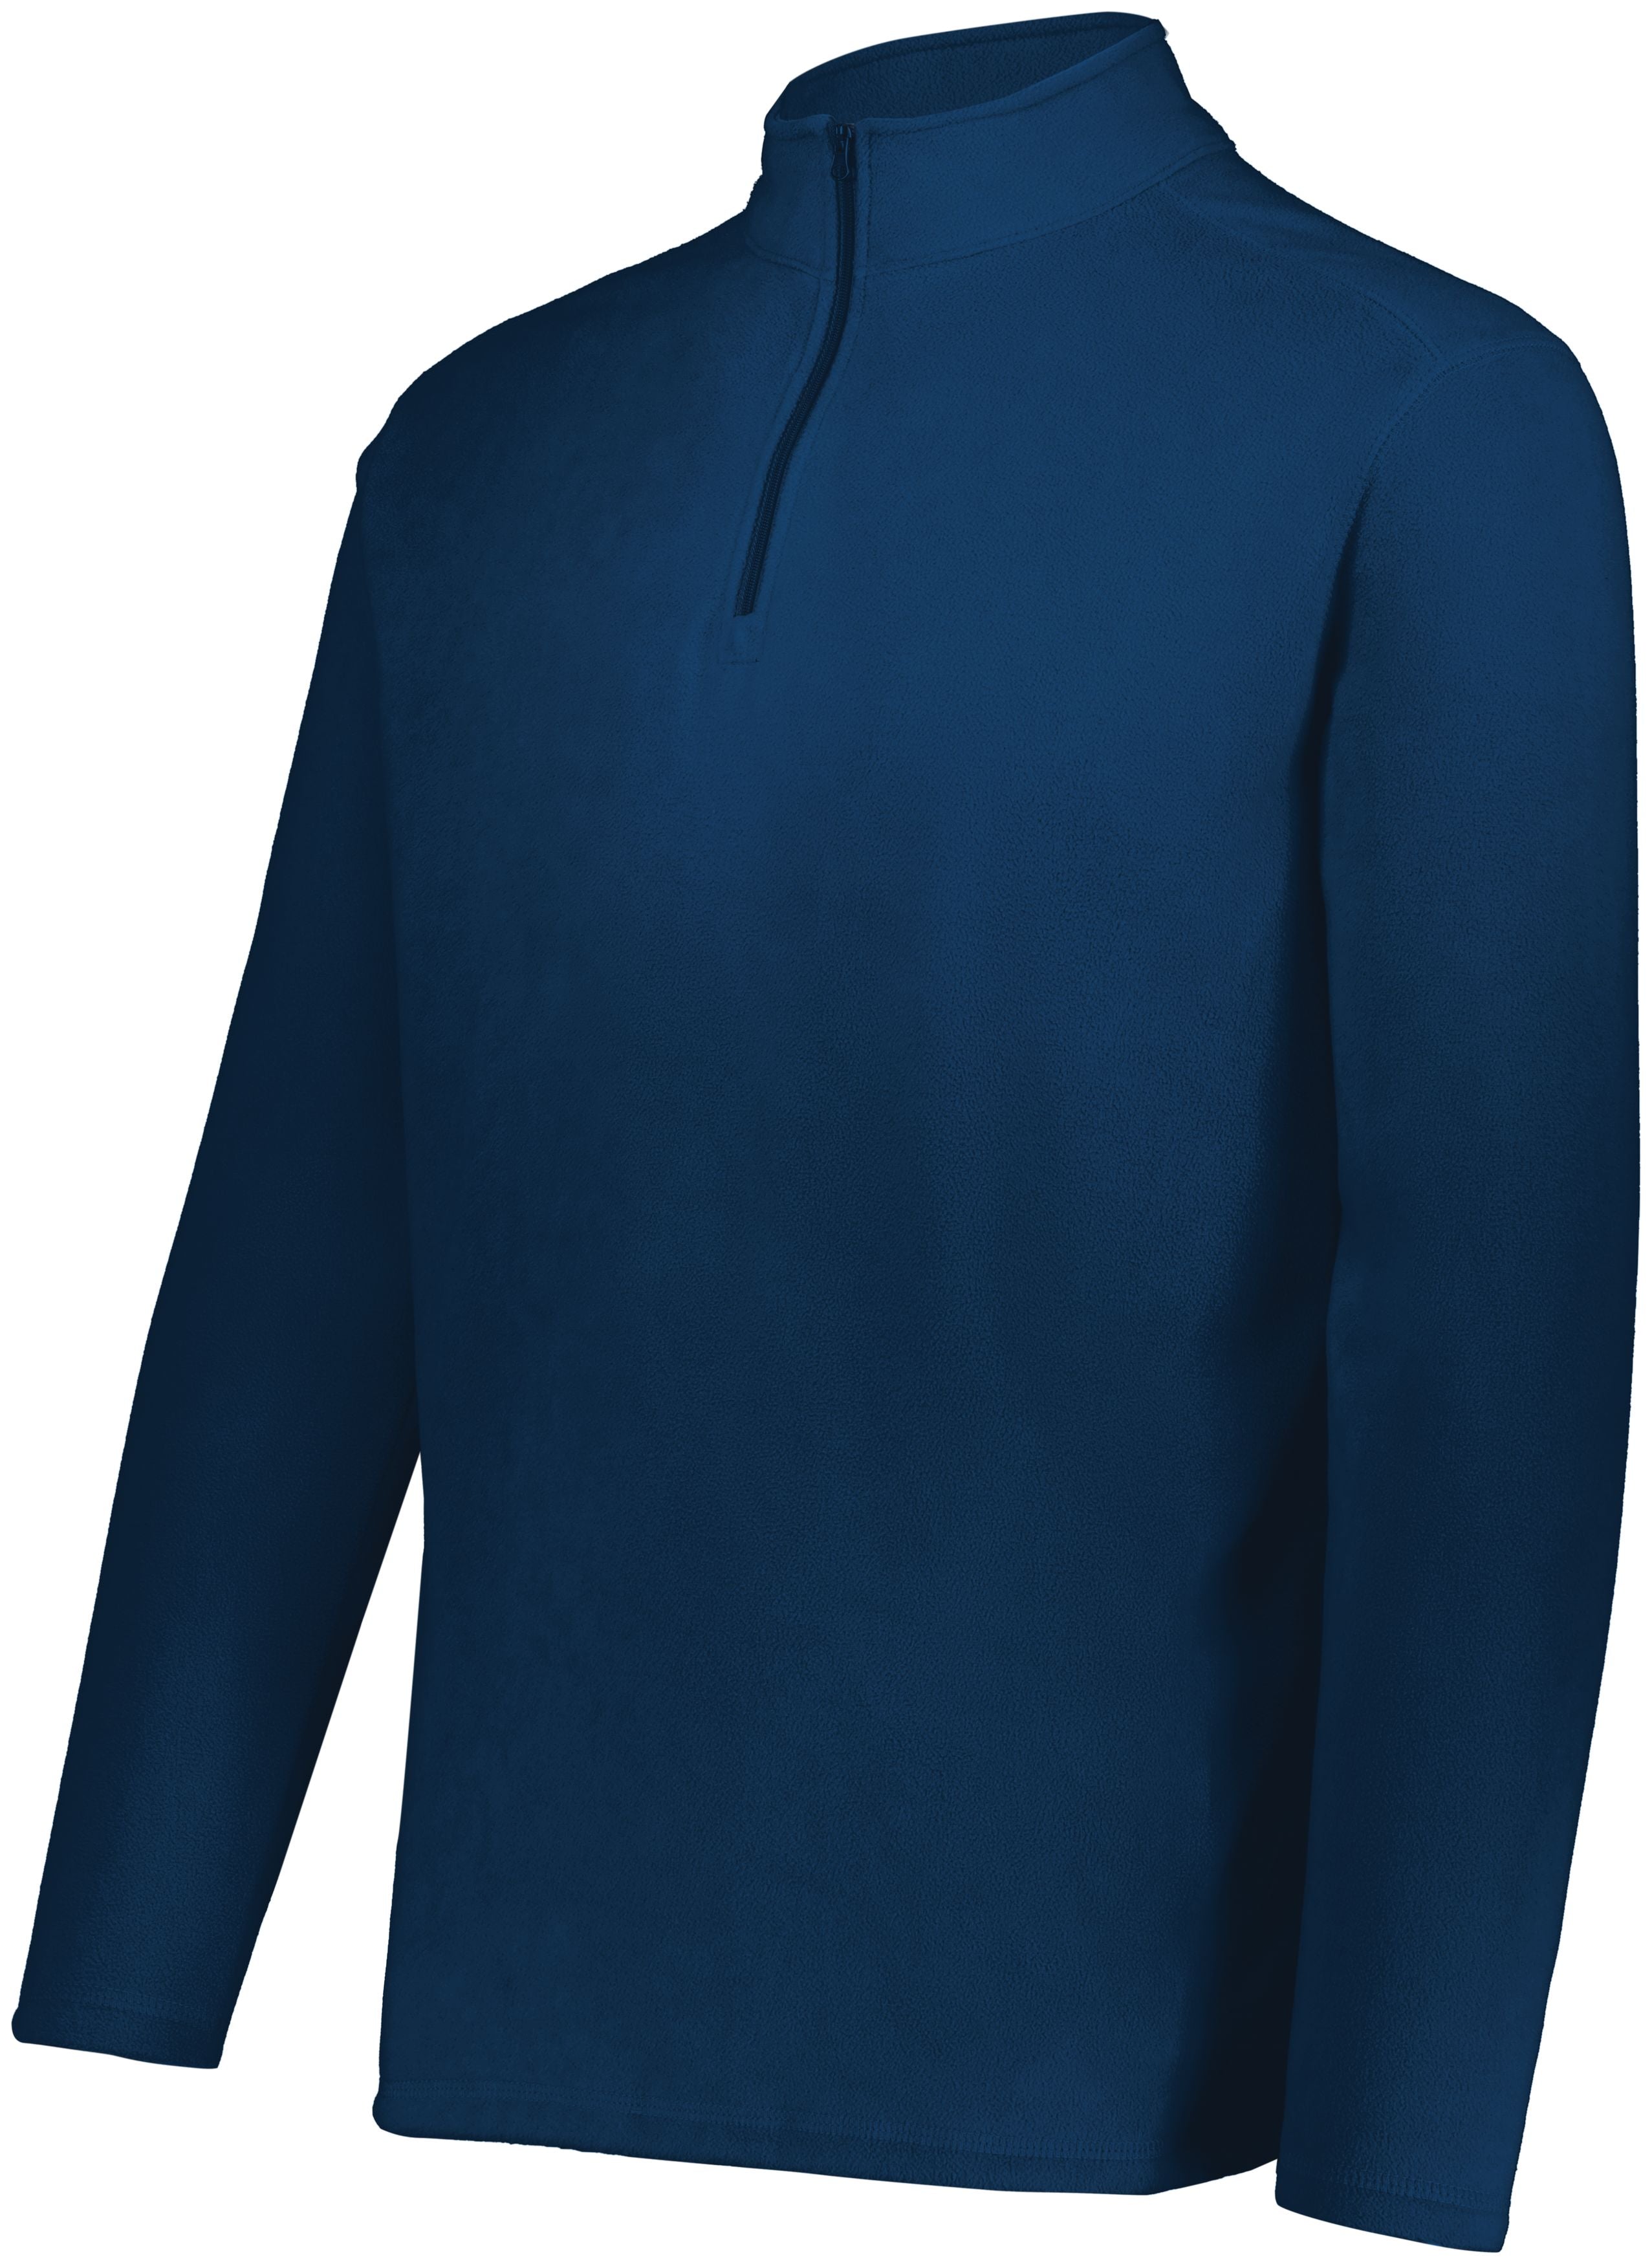 C3) 6863 Augusta Sportswear Micro-Lite Fleece 1/4 Zip Pullover - SHEARCORE